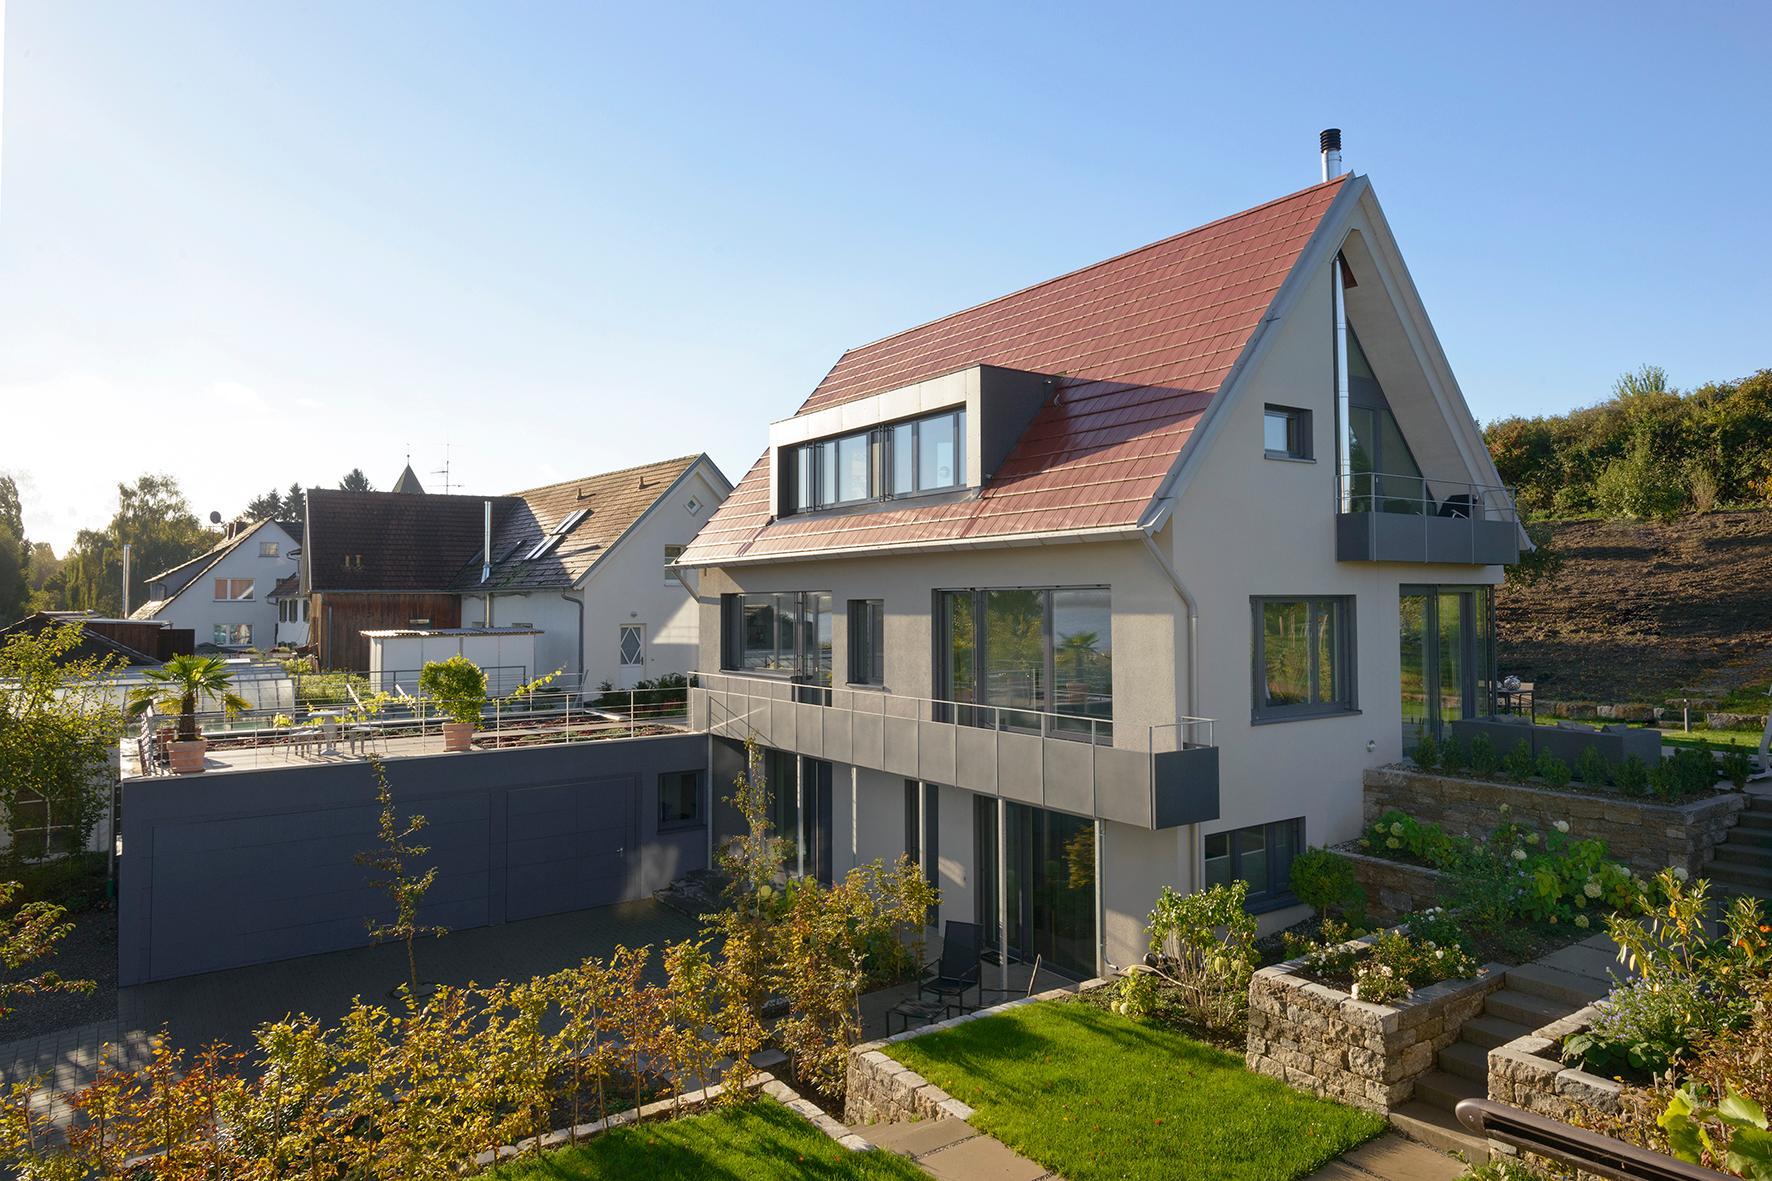 Einfamilienhaus mit Seesicht #hochbeet #garage #neubau ©Spaett Architekten